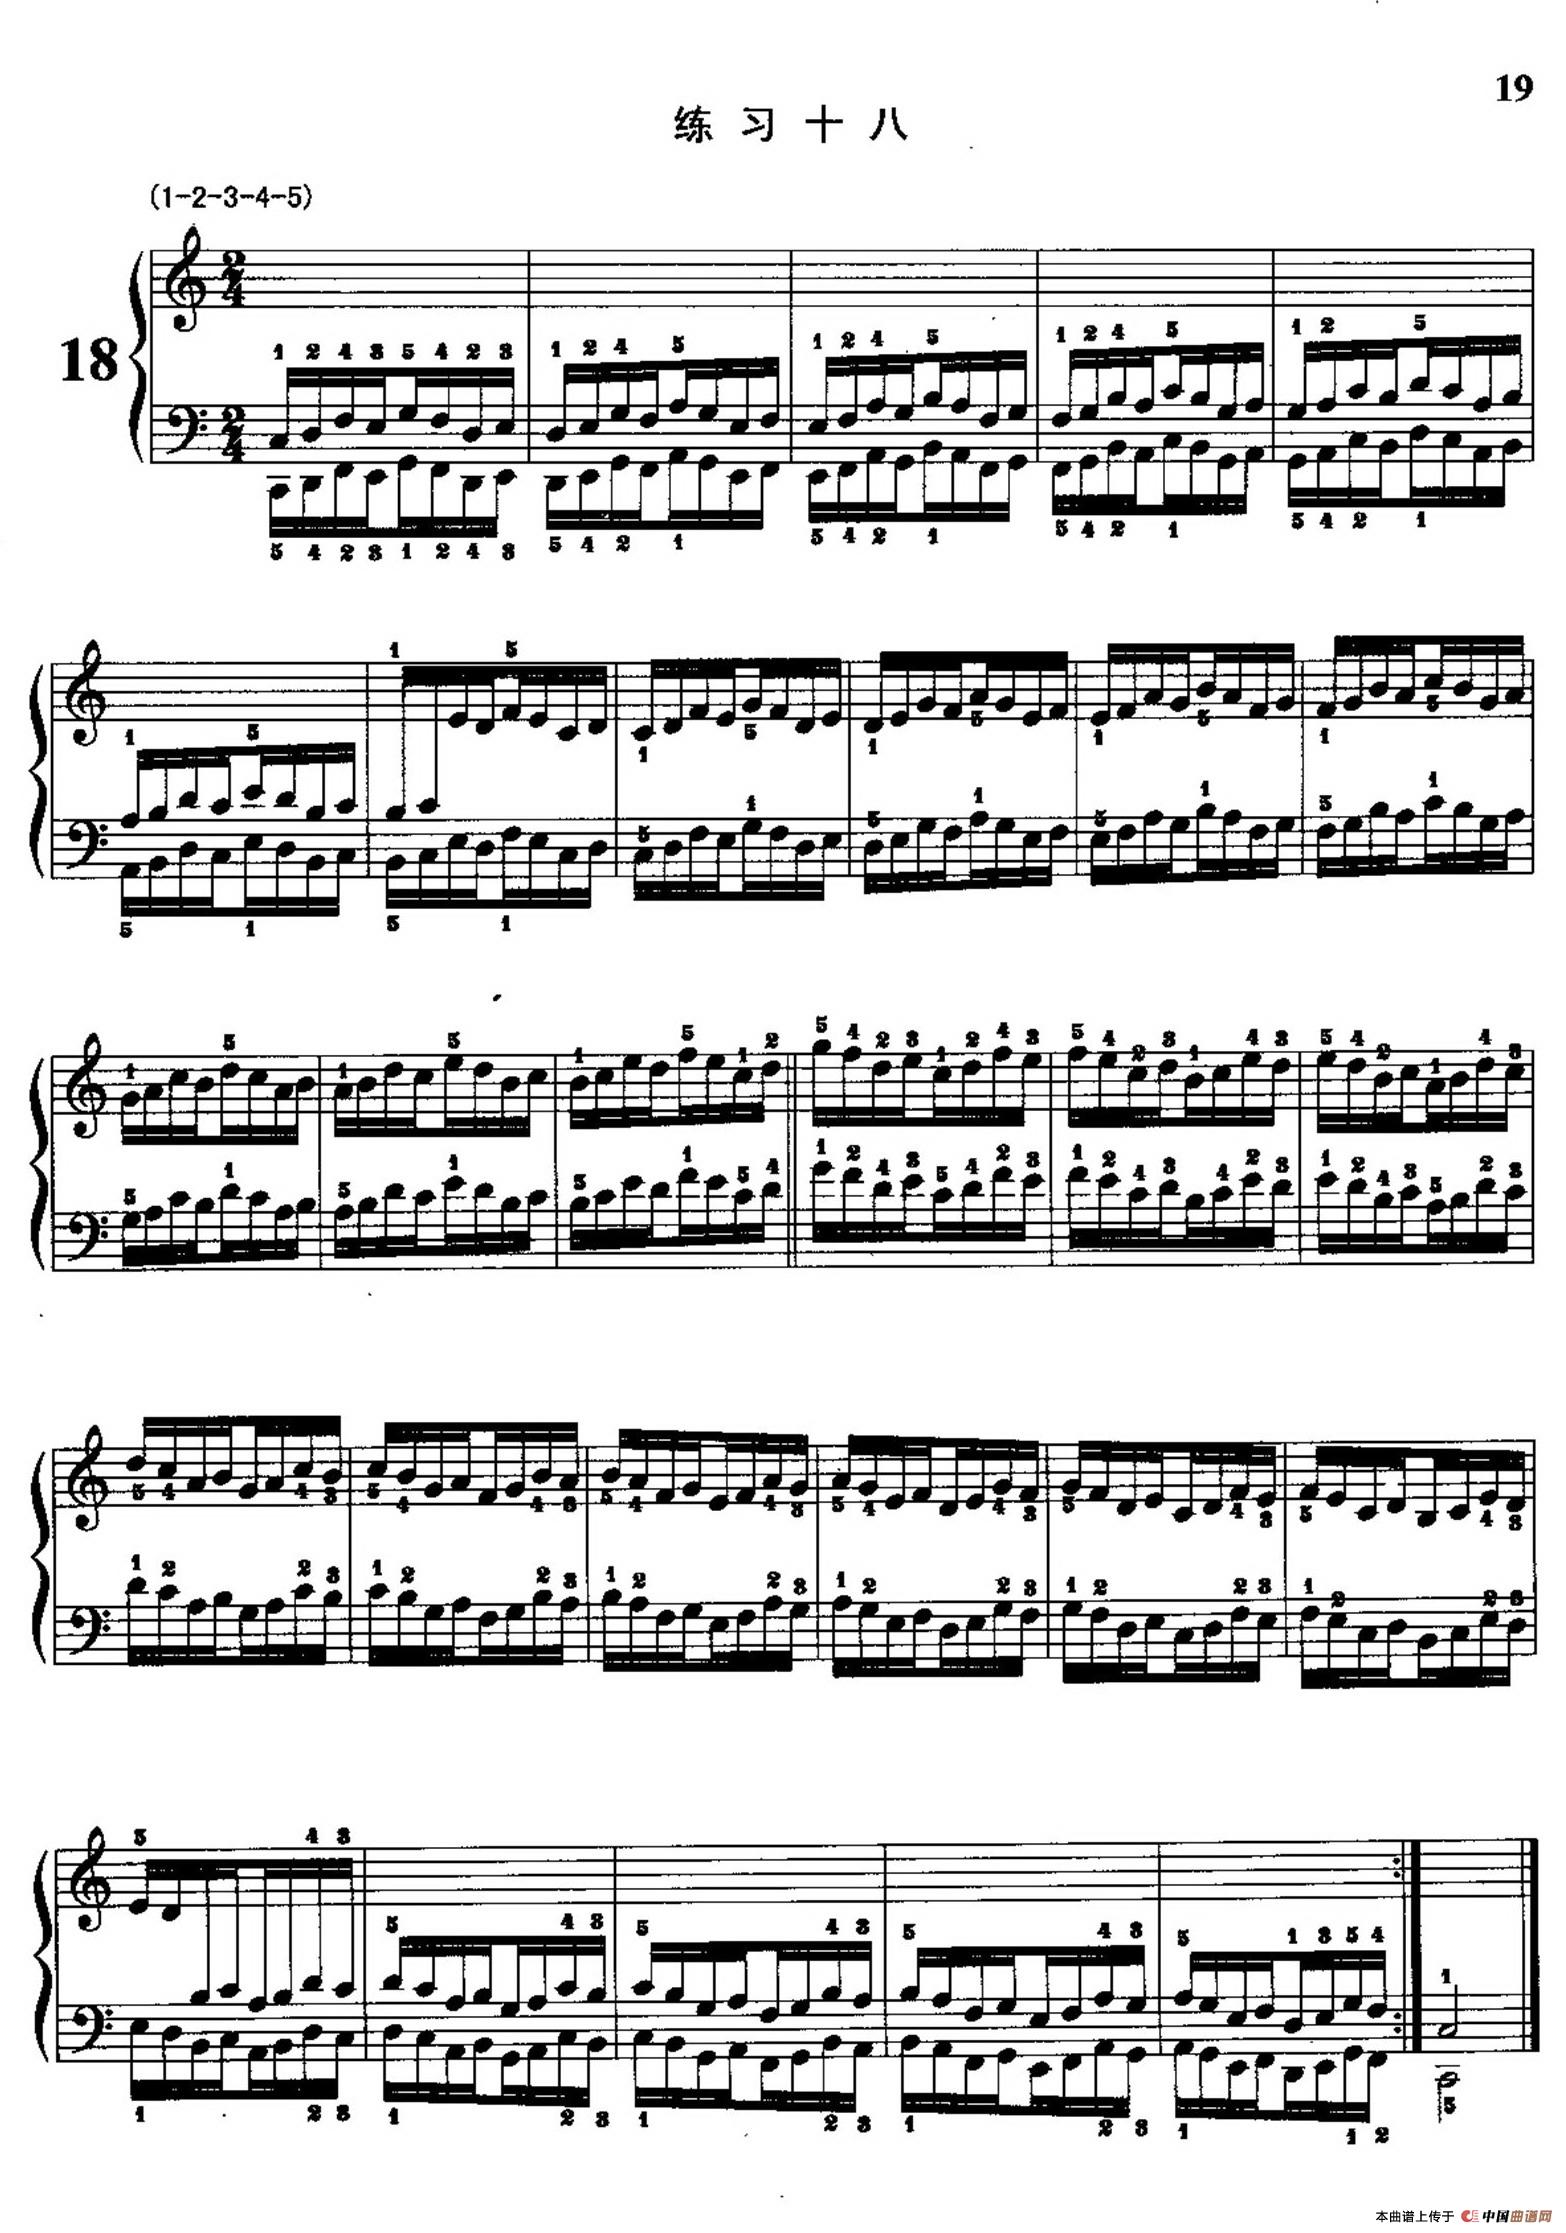 「哈农钢琴练指法」歌谱简谱查看提示1,点击图片可以打开当前曲谱图片